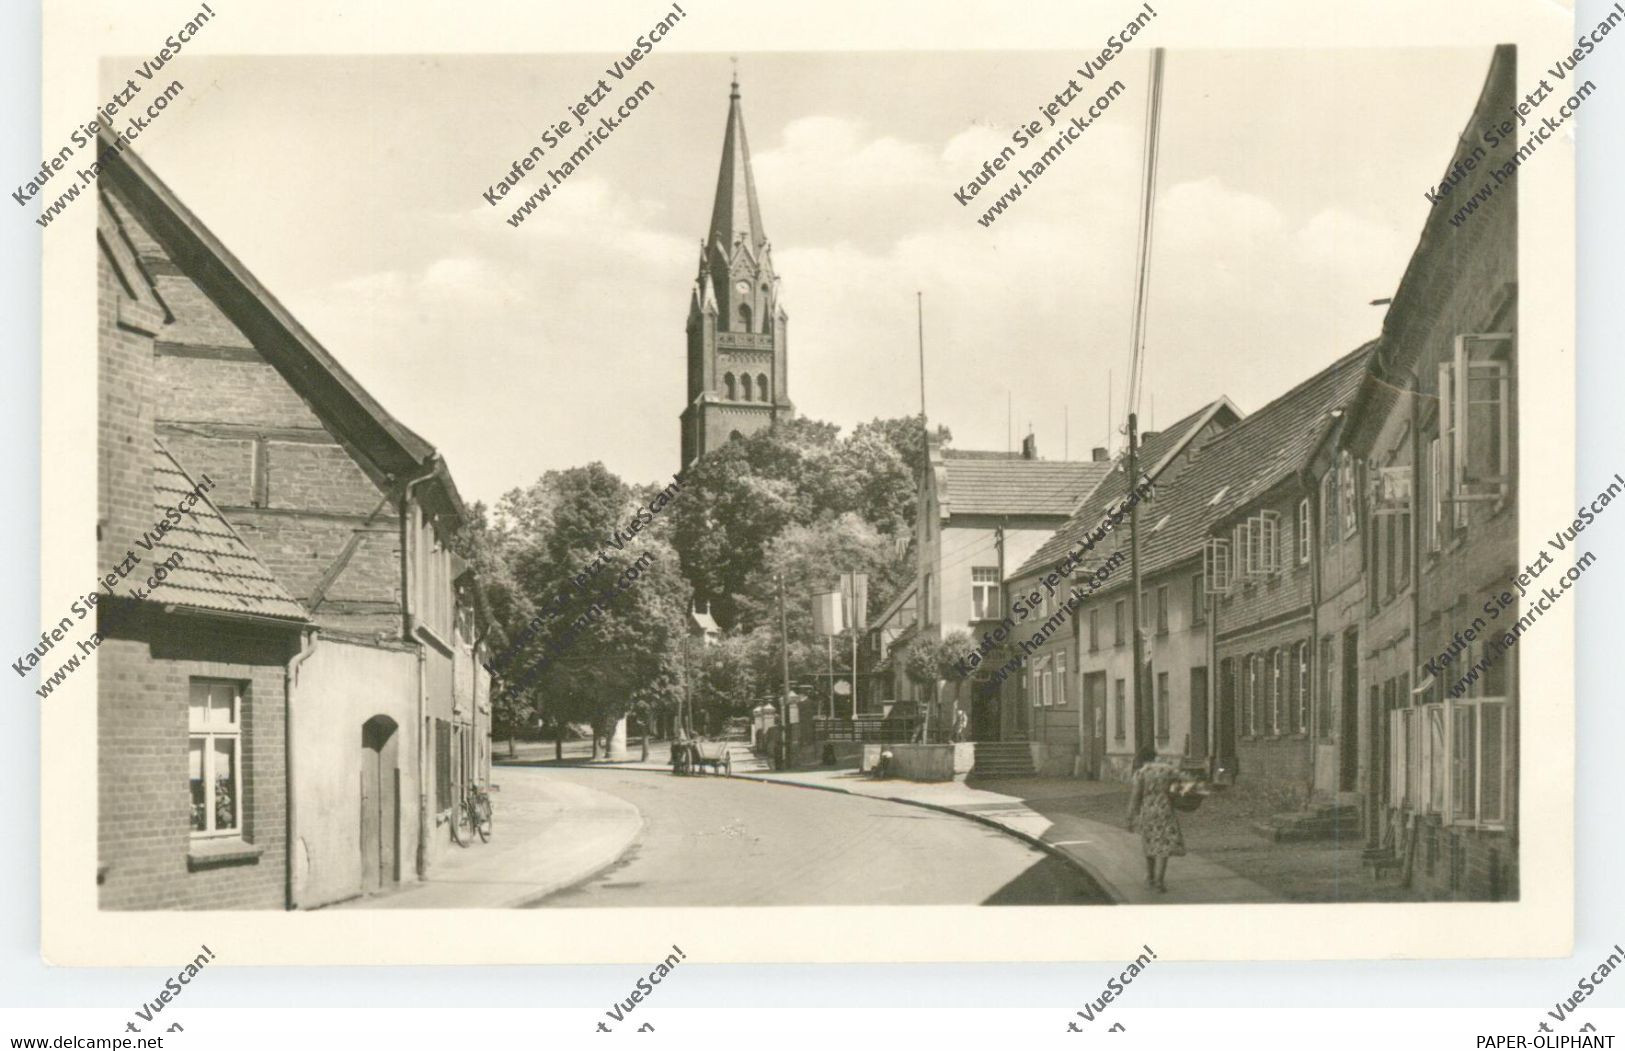 0-2070 RÖBEL / Müritz, Strassenpartie, St. Marienkirche, 1955 - Roebel